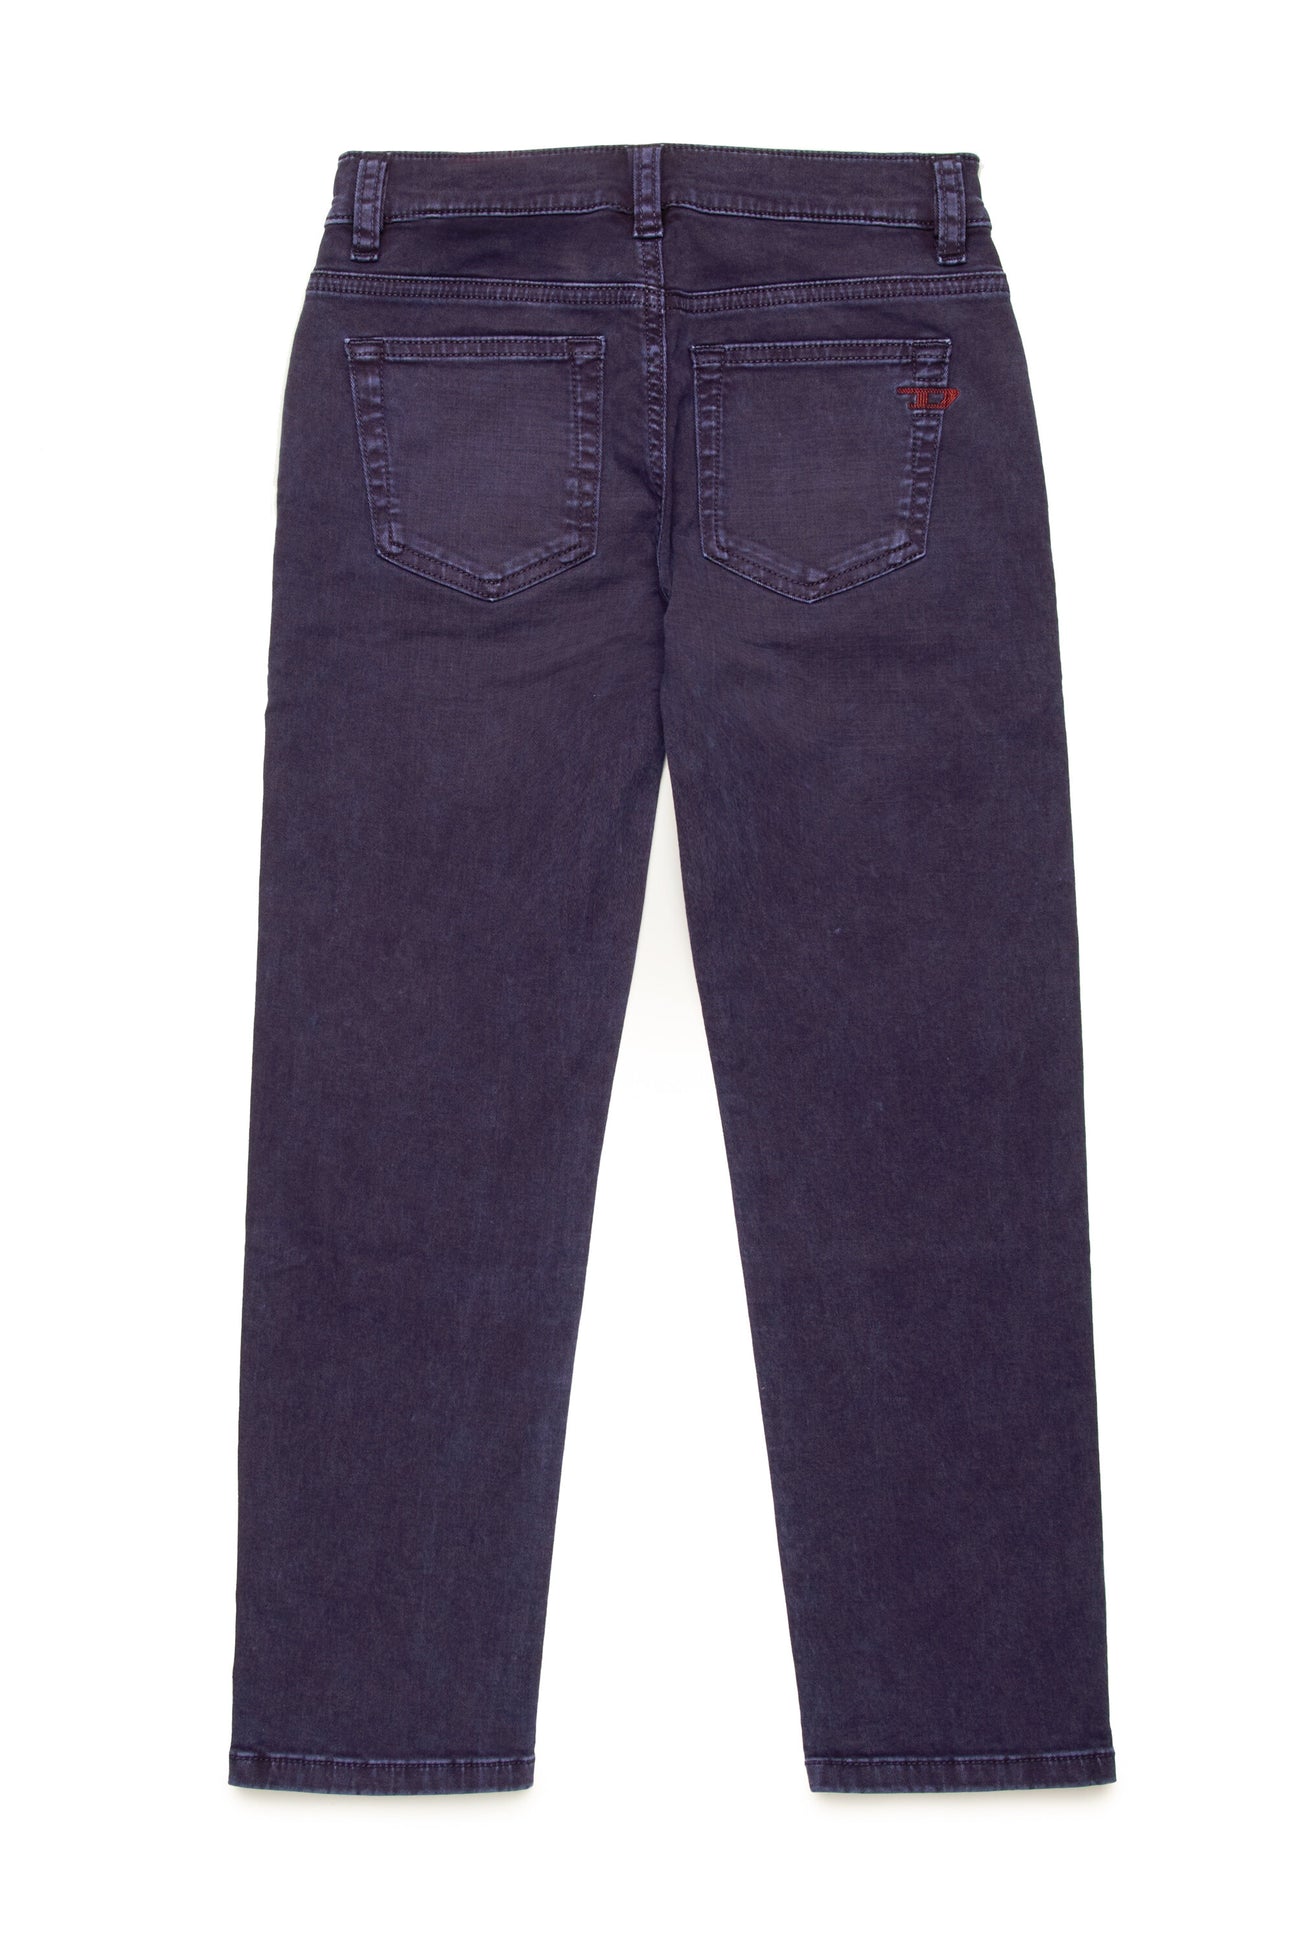 Coloured Straight Jeans - 2020 D-Viker Coloured Straight Jeans - 2020 D-Viker